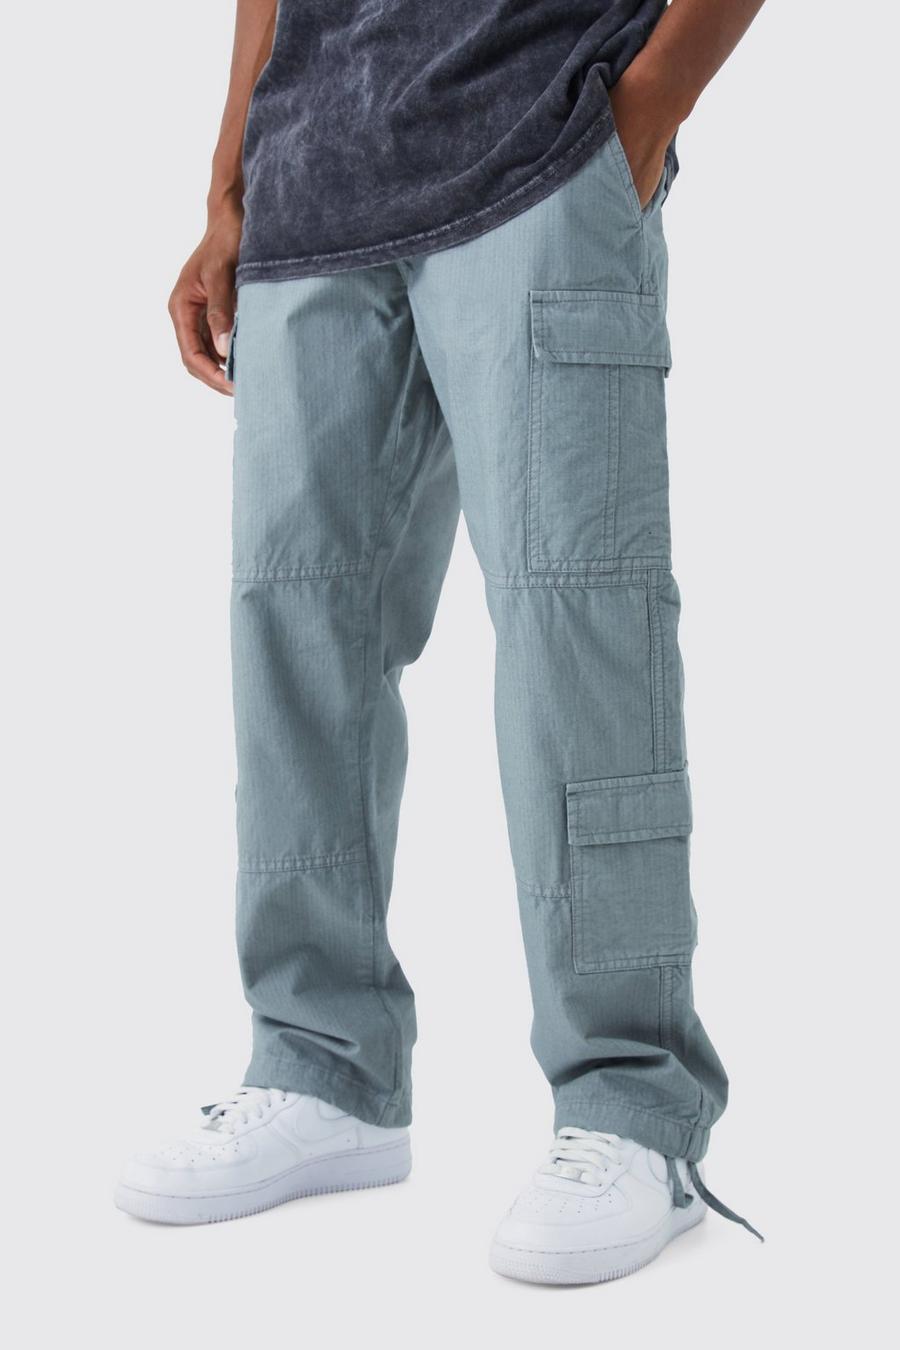 Pantaloni Cargo rilassati in nylon ripstop con etichetta in tessuto, Slate